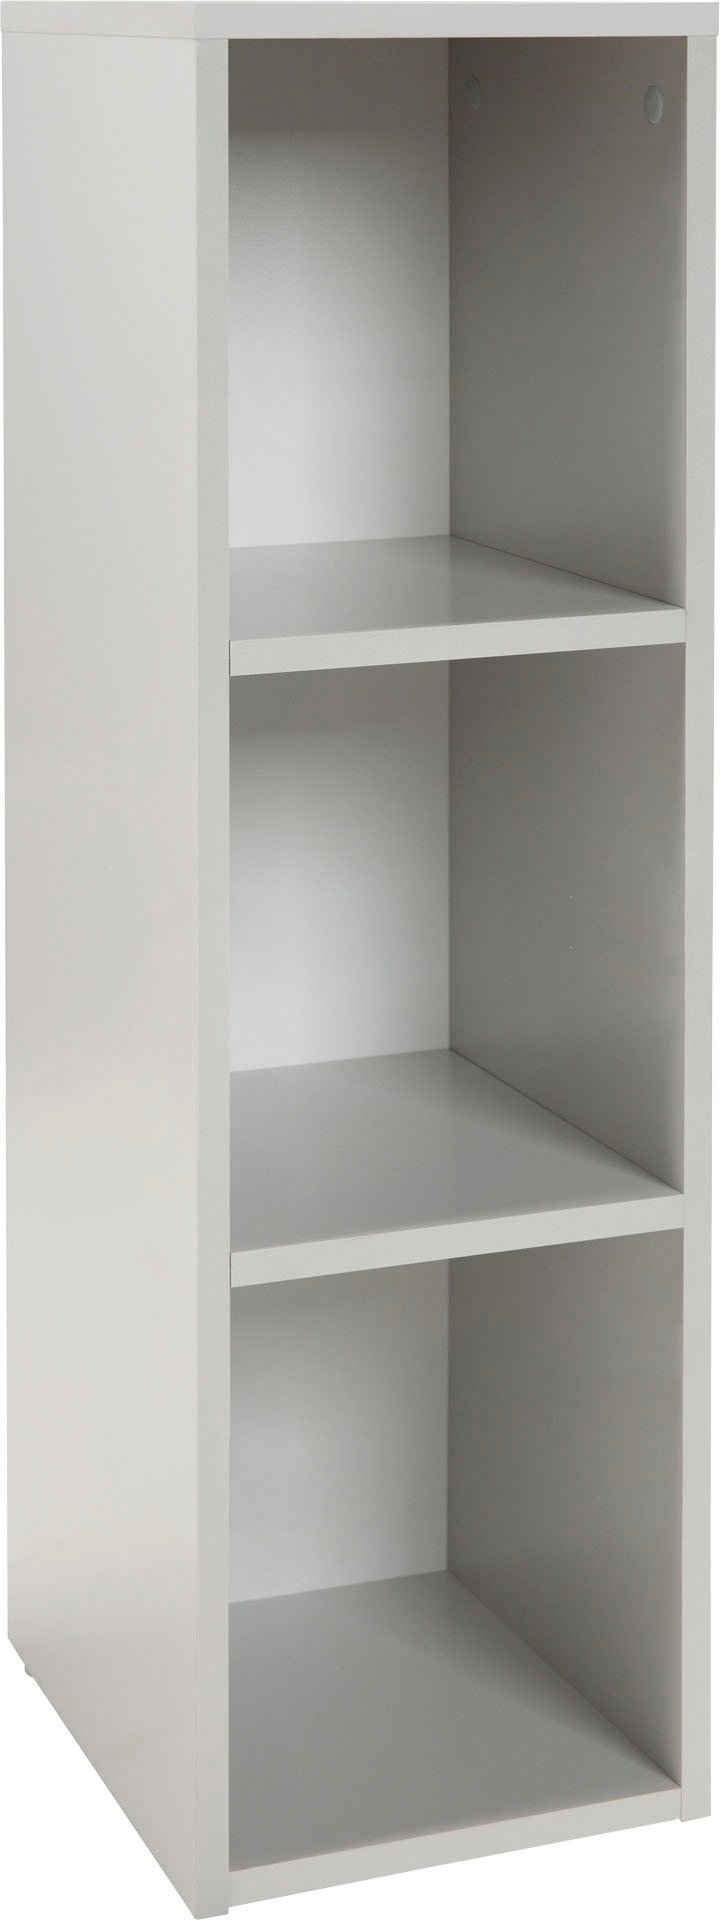 roba® Seitenregal Universales Standregal für Babyzimmer, aus Holz, nutzbar als Seitenregal unter Wickelkommode oder Standregal